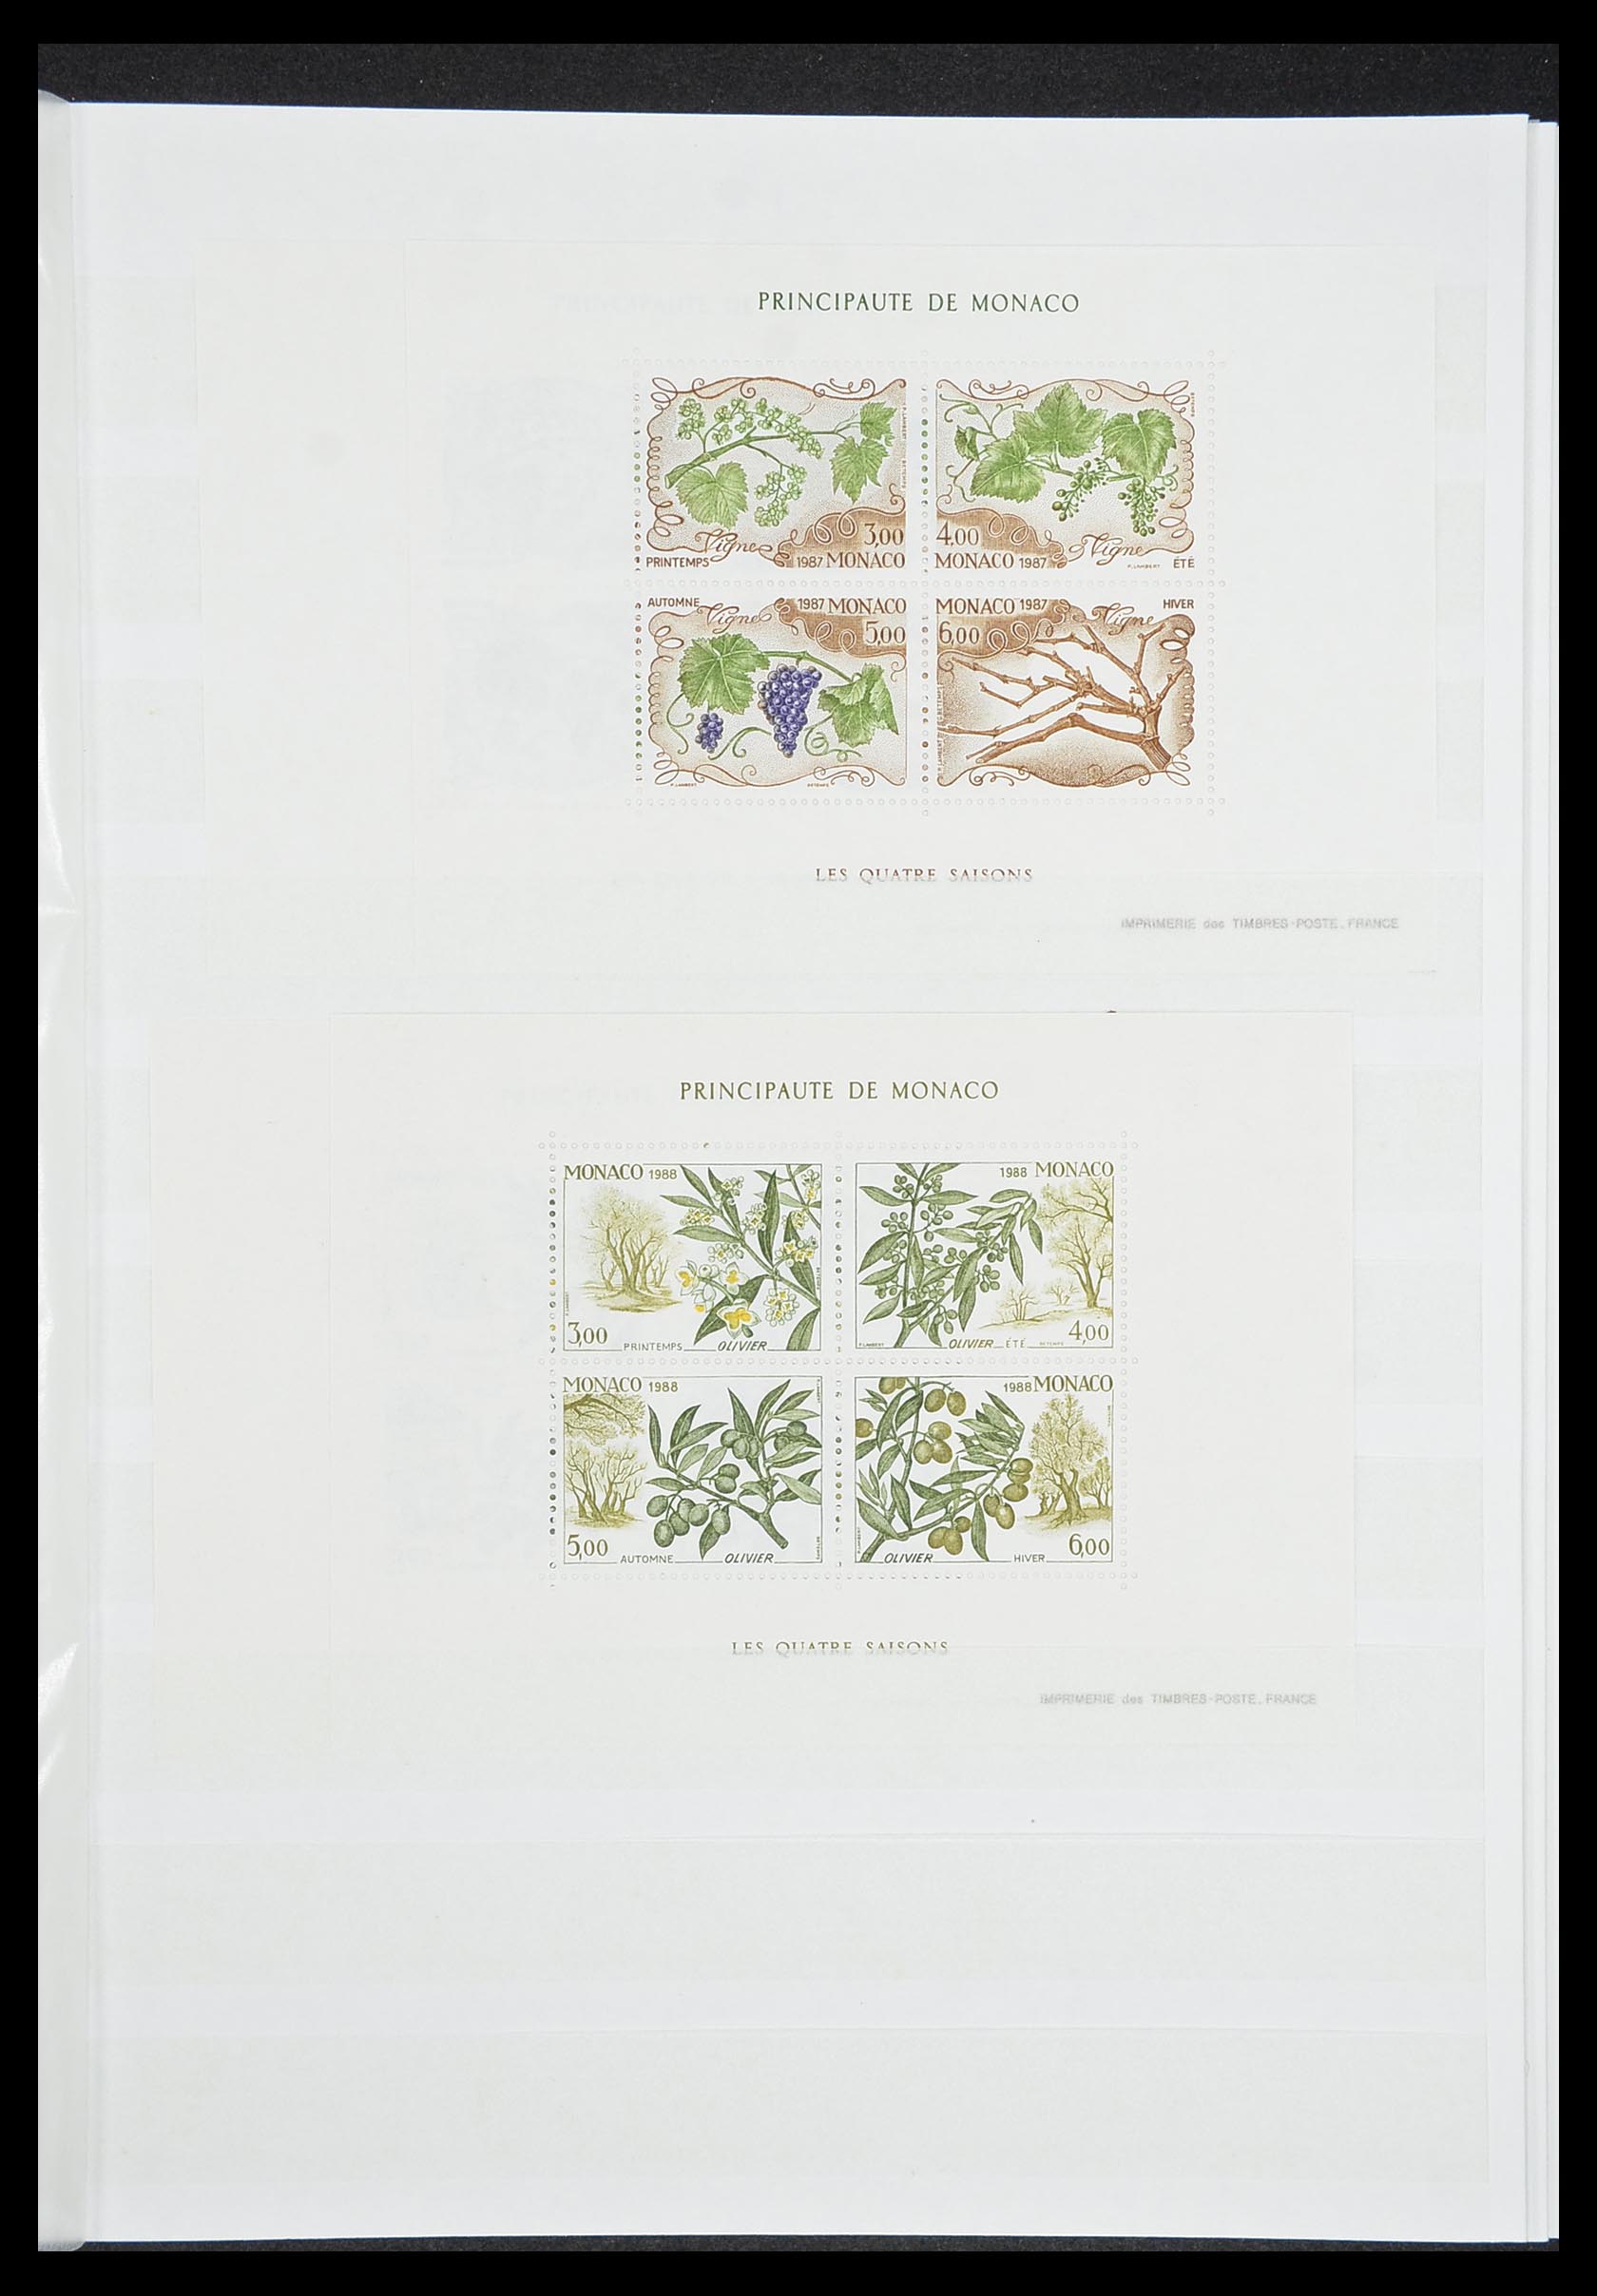 33833 021 - Stamp collection 33833 Monaco souvenir sheets 1979-2015.